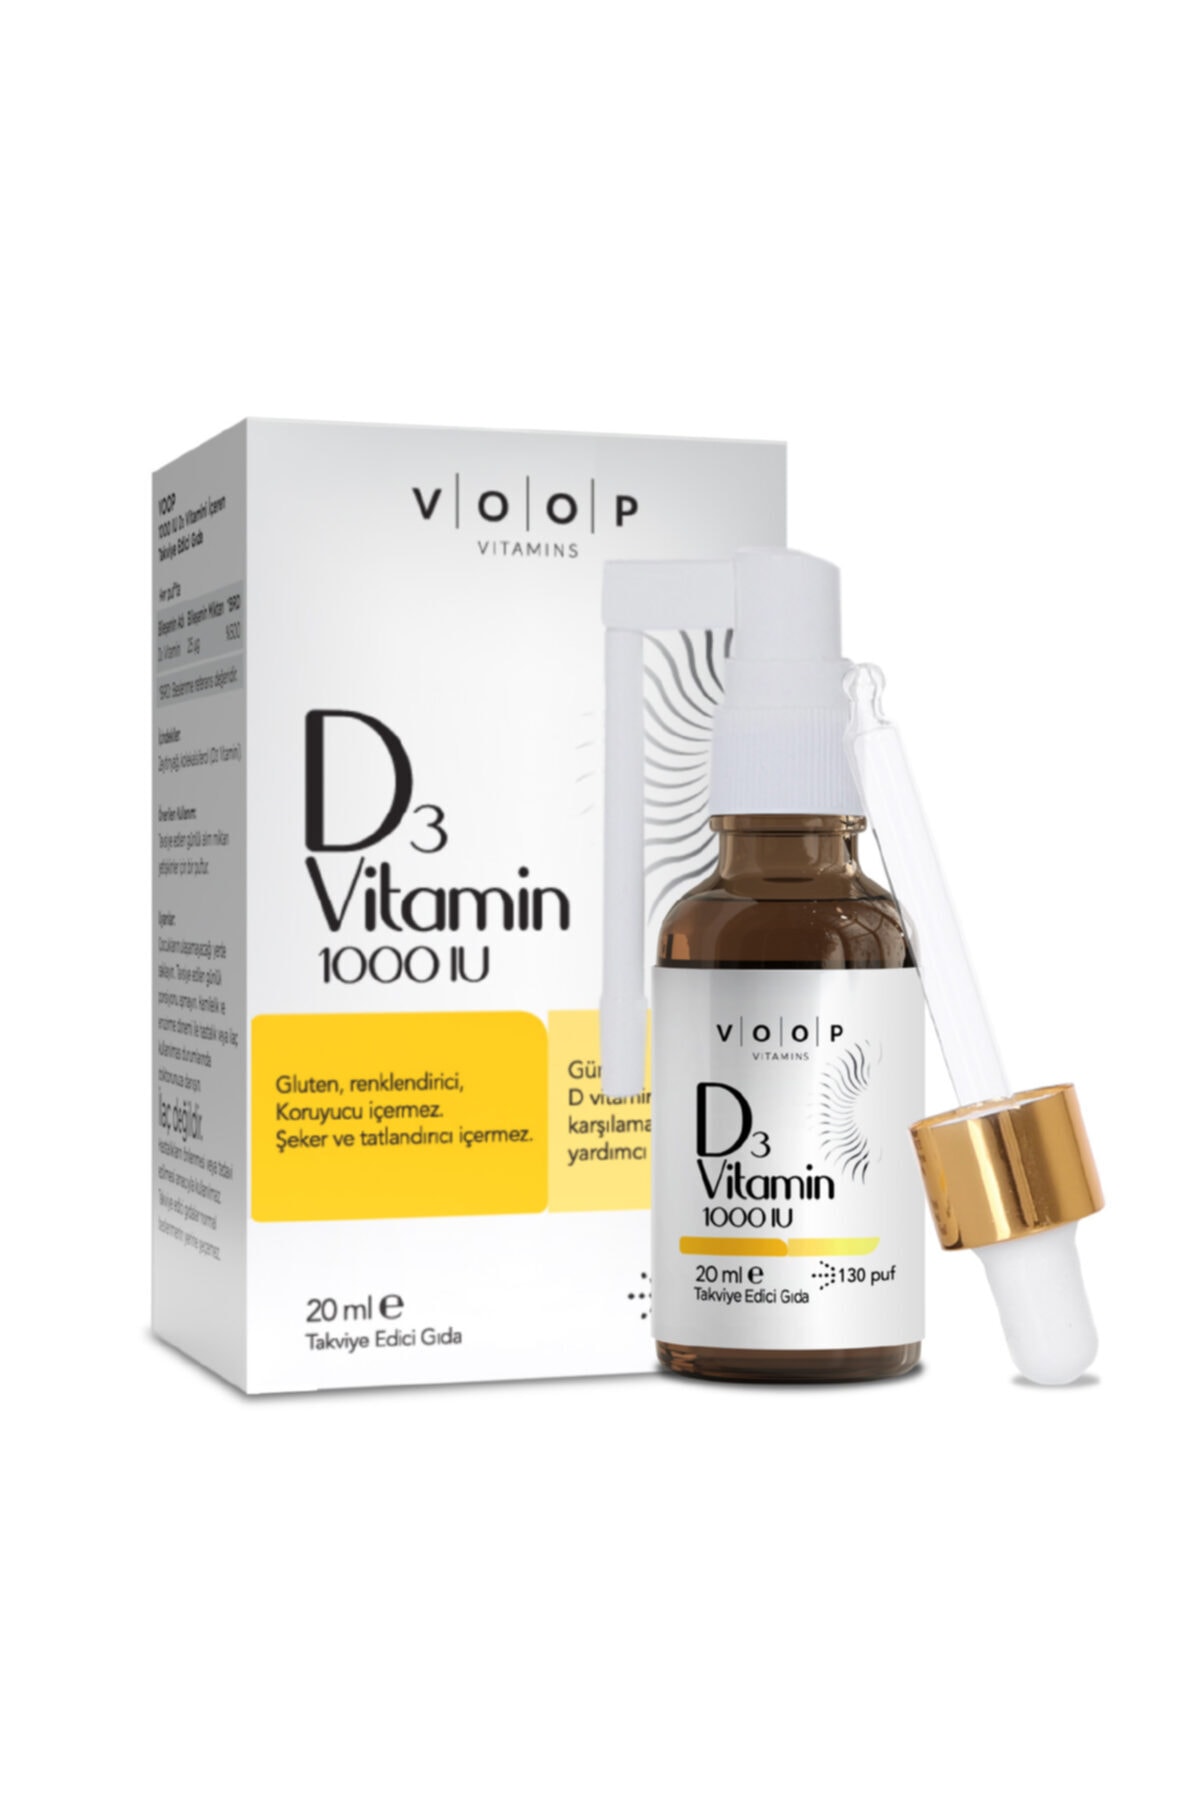 VOOP Vitamin D3 1000 Spray-drop 20 Ml Vitamin Vitamin Vitamin D/D3 1000IU * 20 ml vätska stöder ben- och muskelhälsa och immunförsvar ny